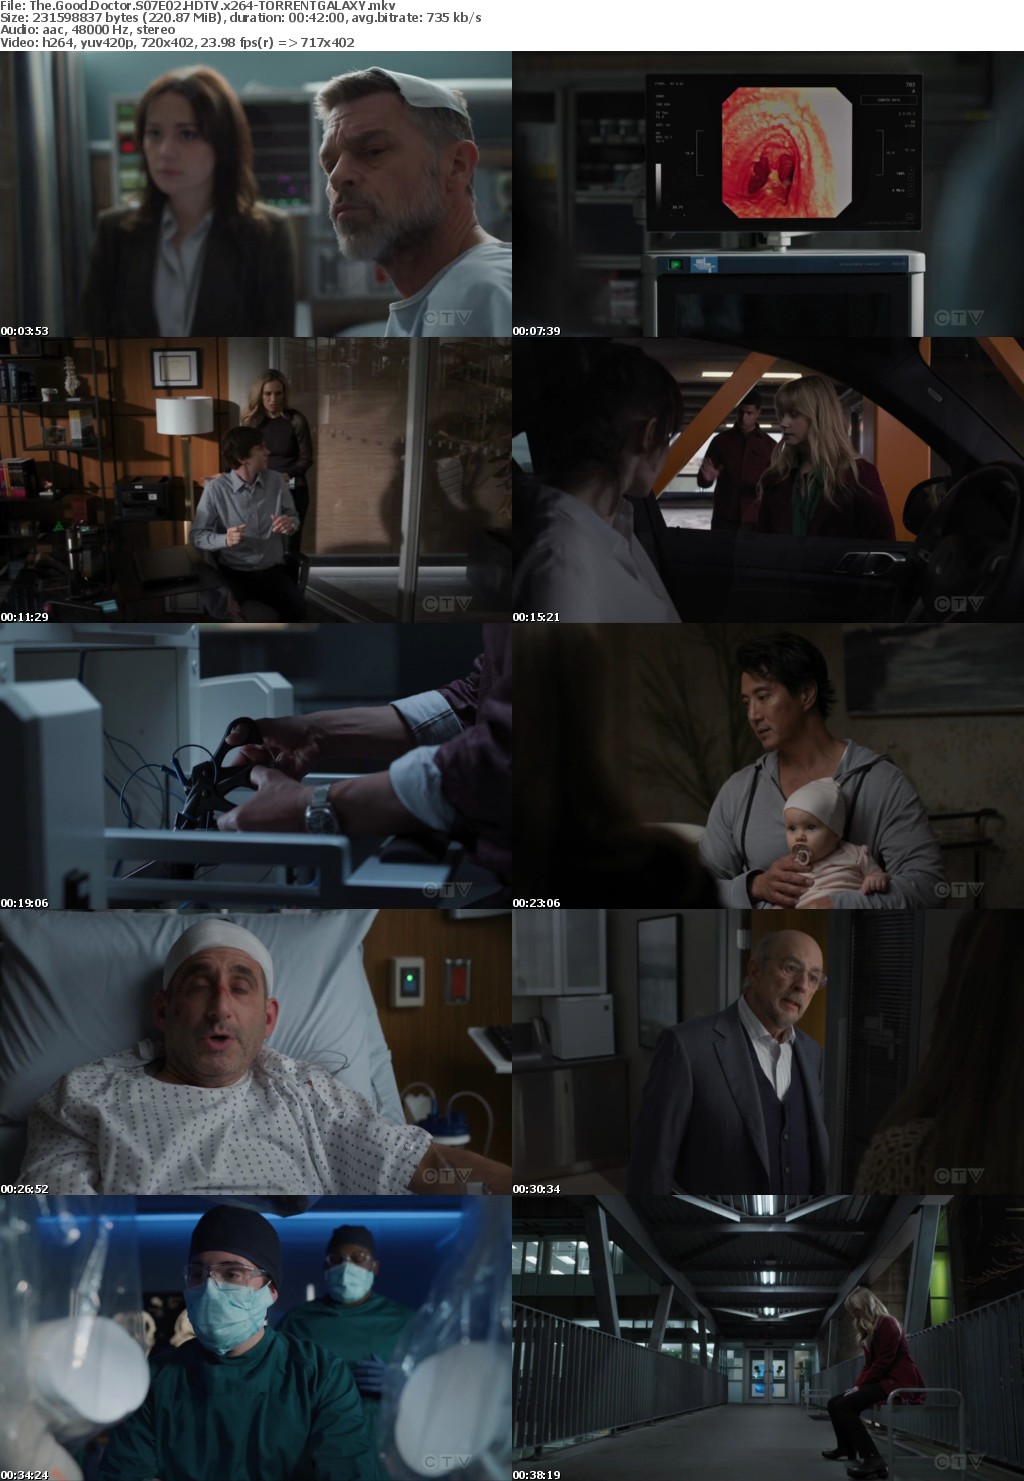 The Good Doctor S07E02 HDTV x264-GALAXY